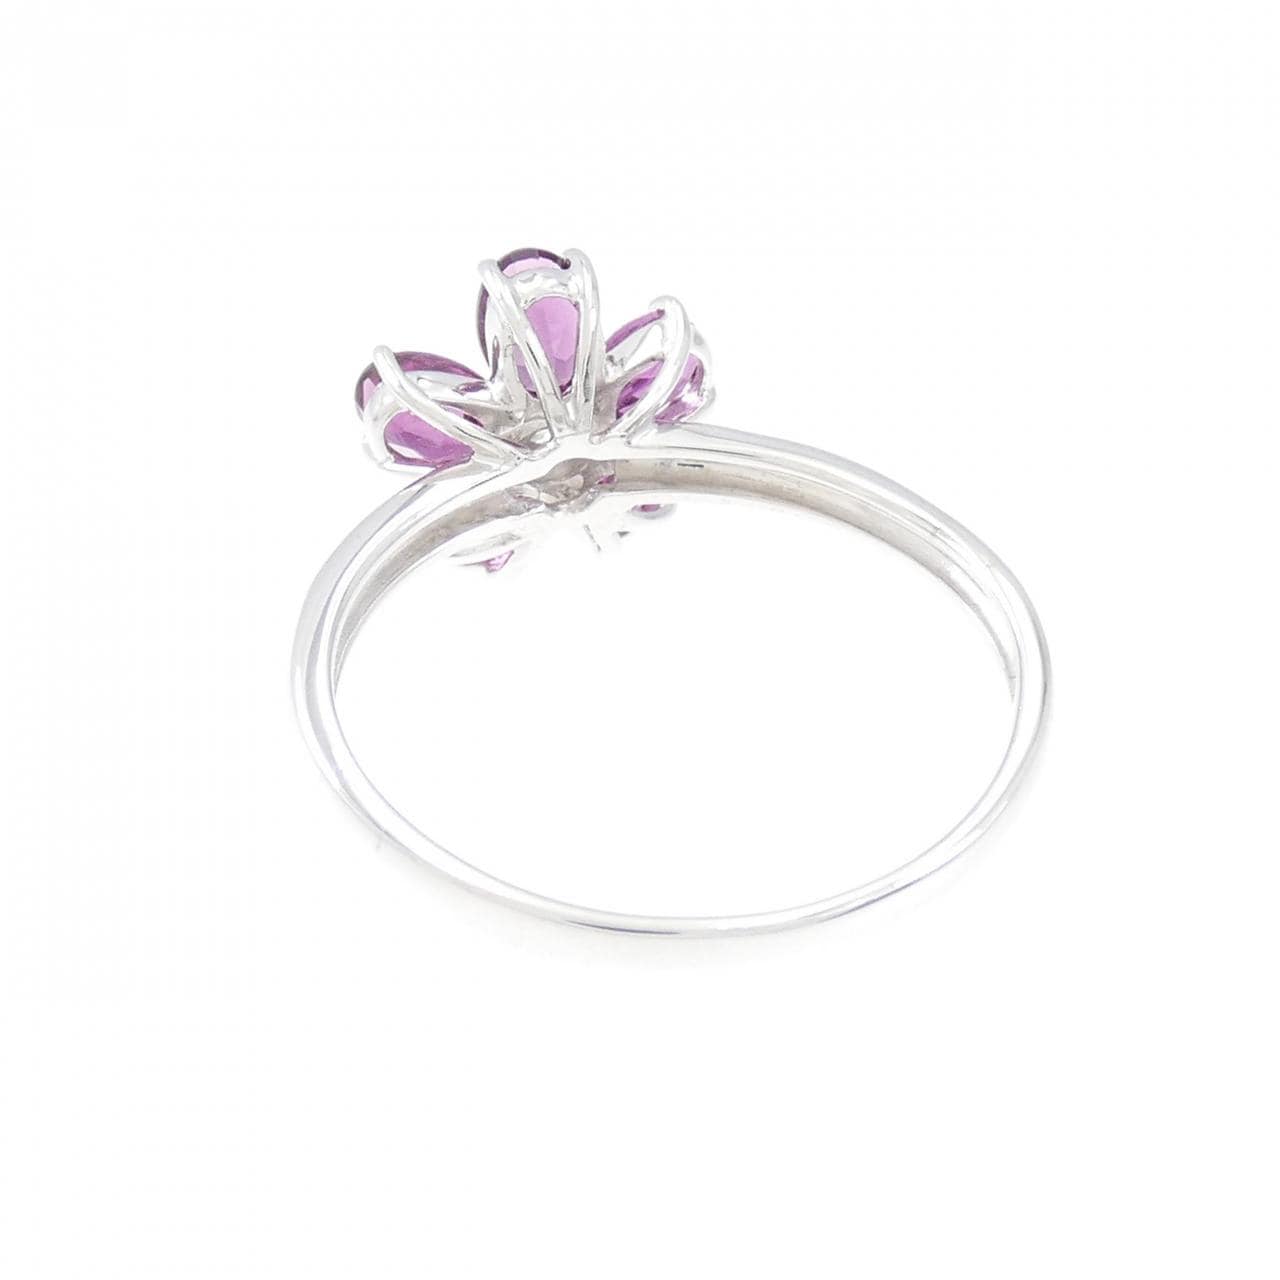 K18WG flower Garnet ring